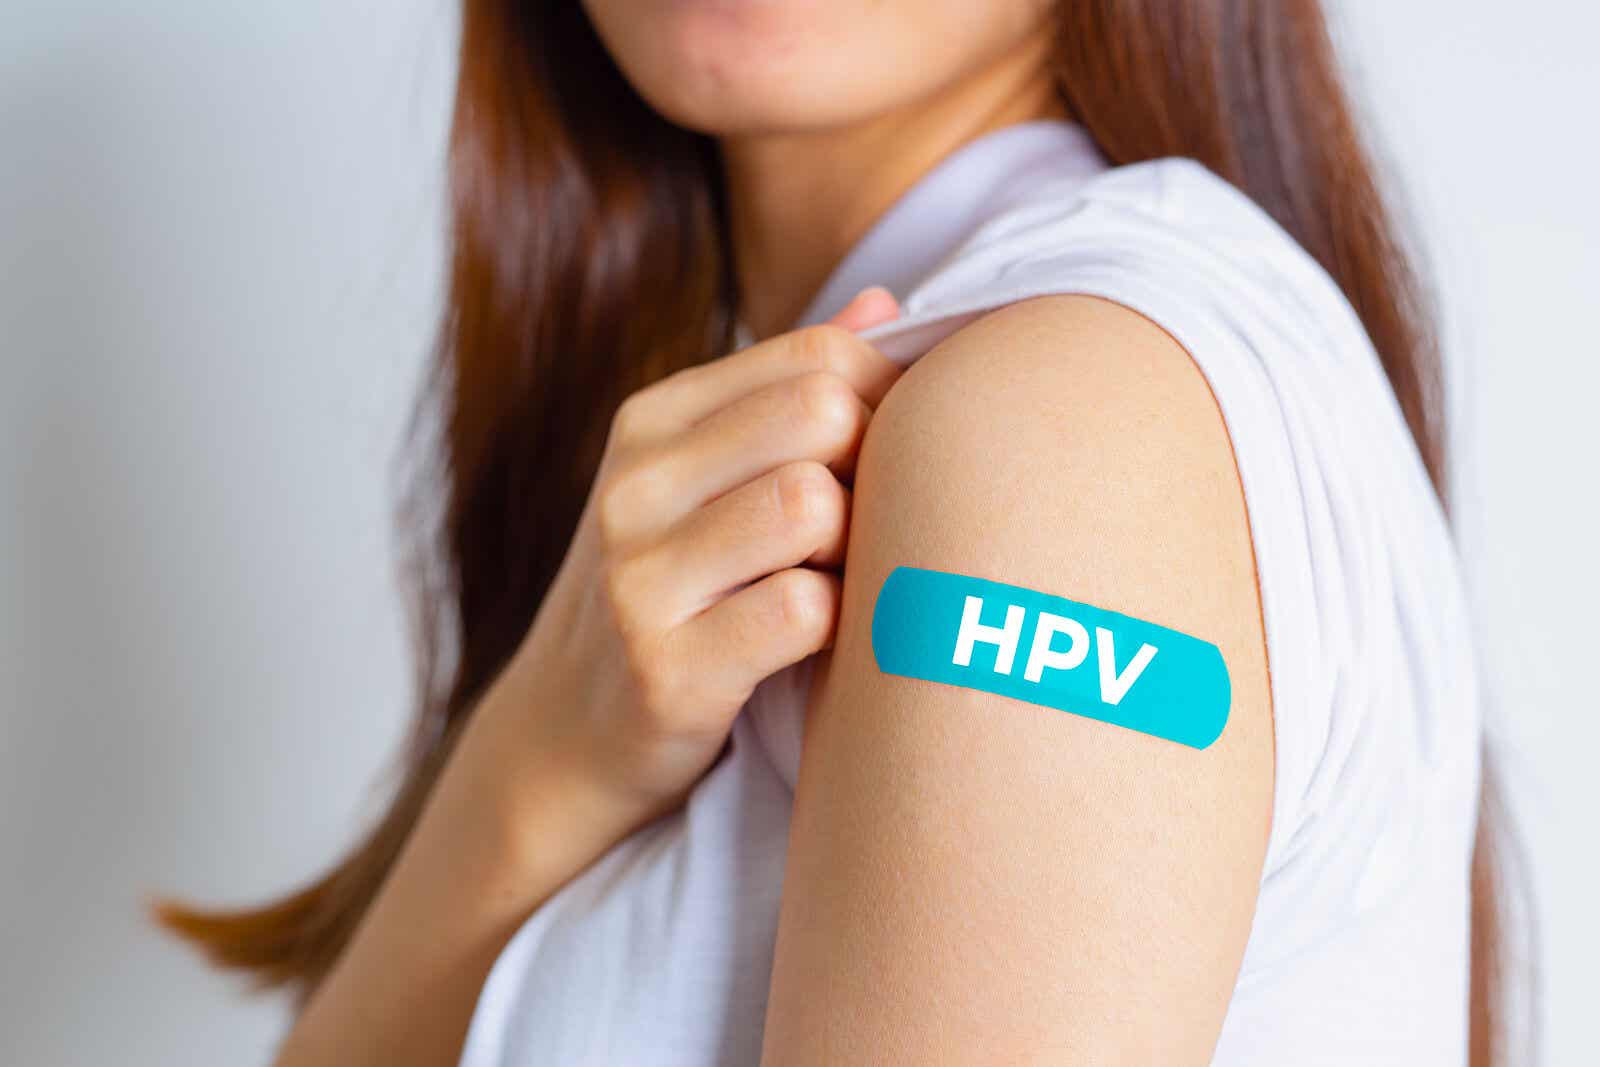 HPV vaccine oral health